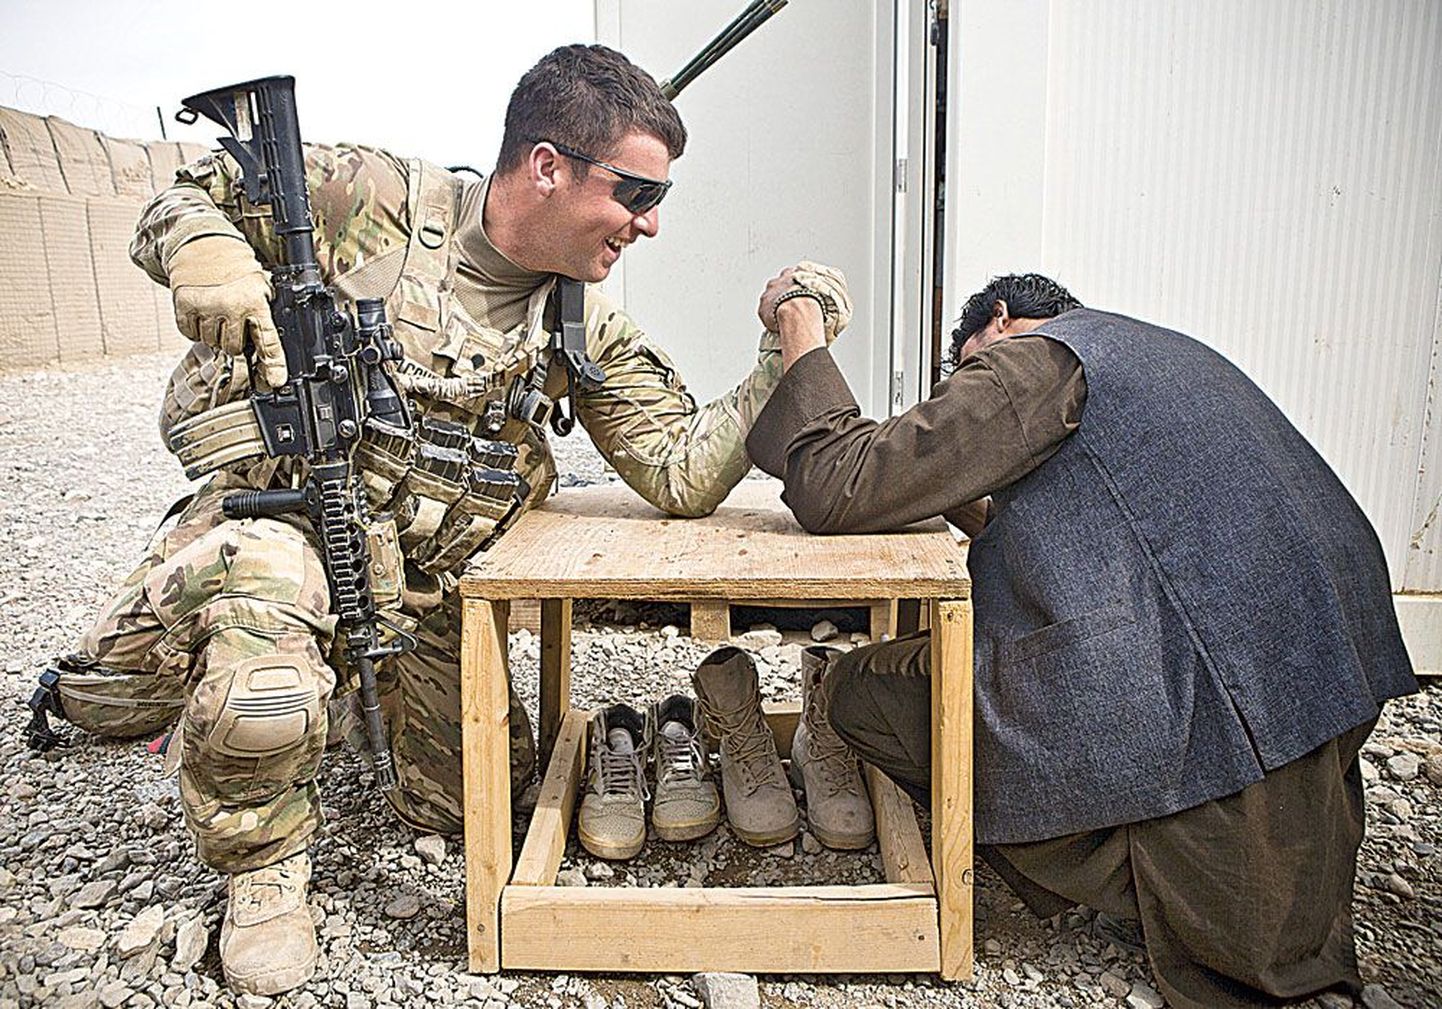 Январь 2013-го, провинция Кандагар: пехотинец США и афганский полицейский выясняют, у кого рука сильнее. К концу 2014 года ответственность за безопасность в Афганистане должна полностью перейти к афганцам.